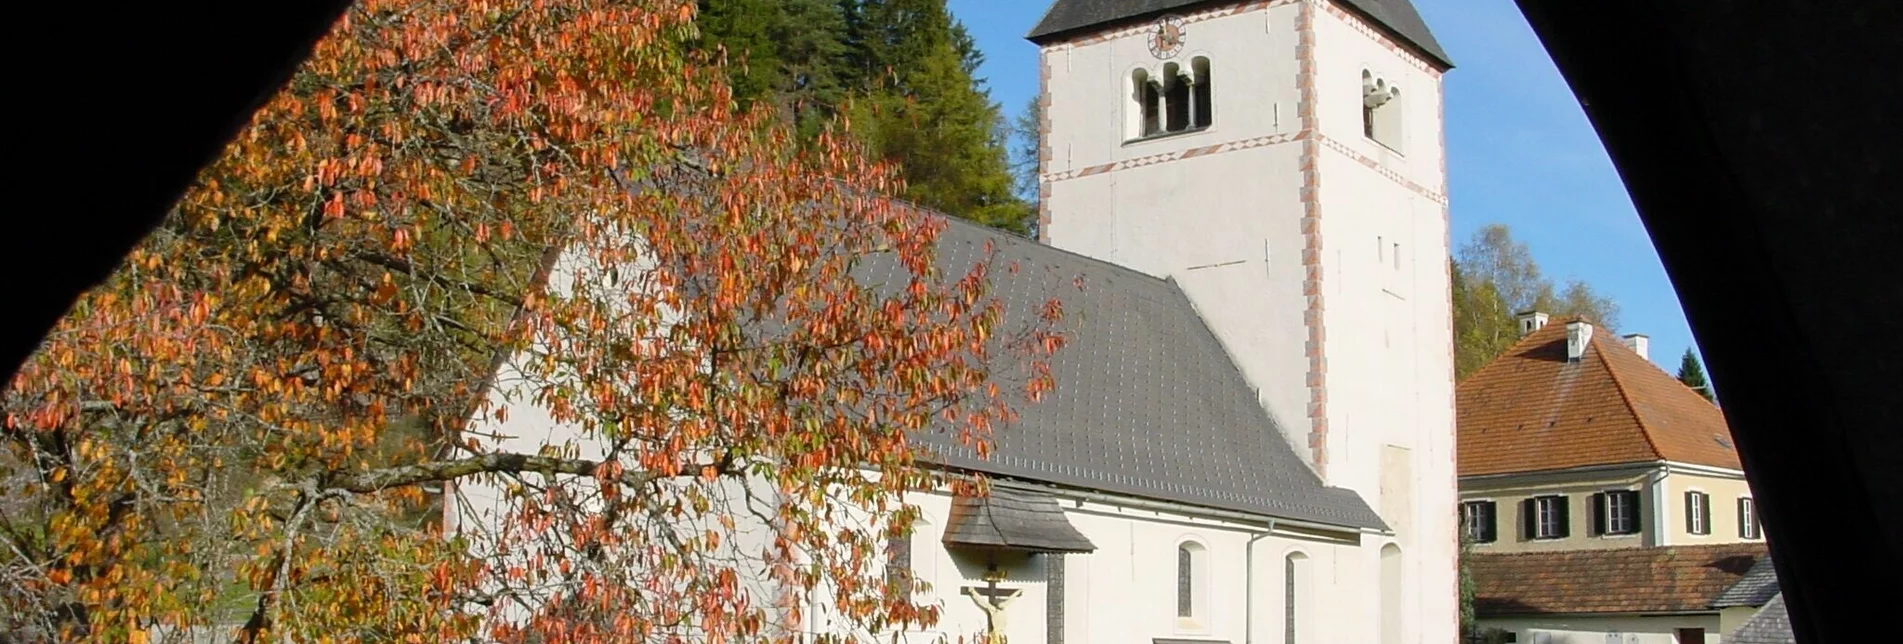 Kirche St. Veit in der Gegend | © Naturpark Zirbitzkogel-Grebenzen